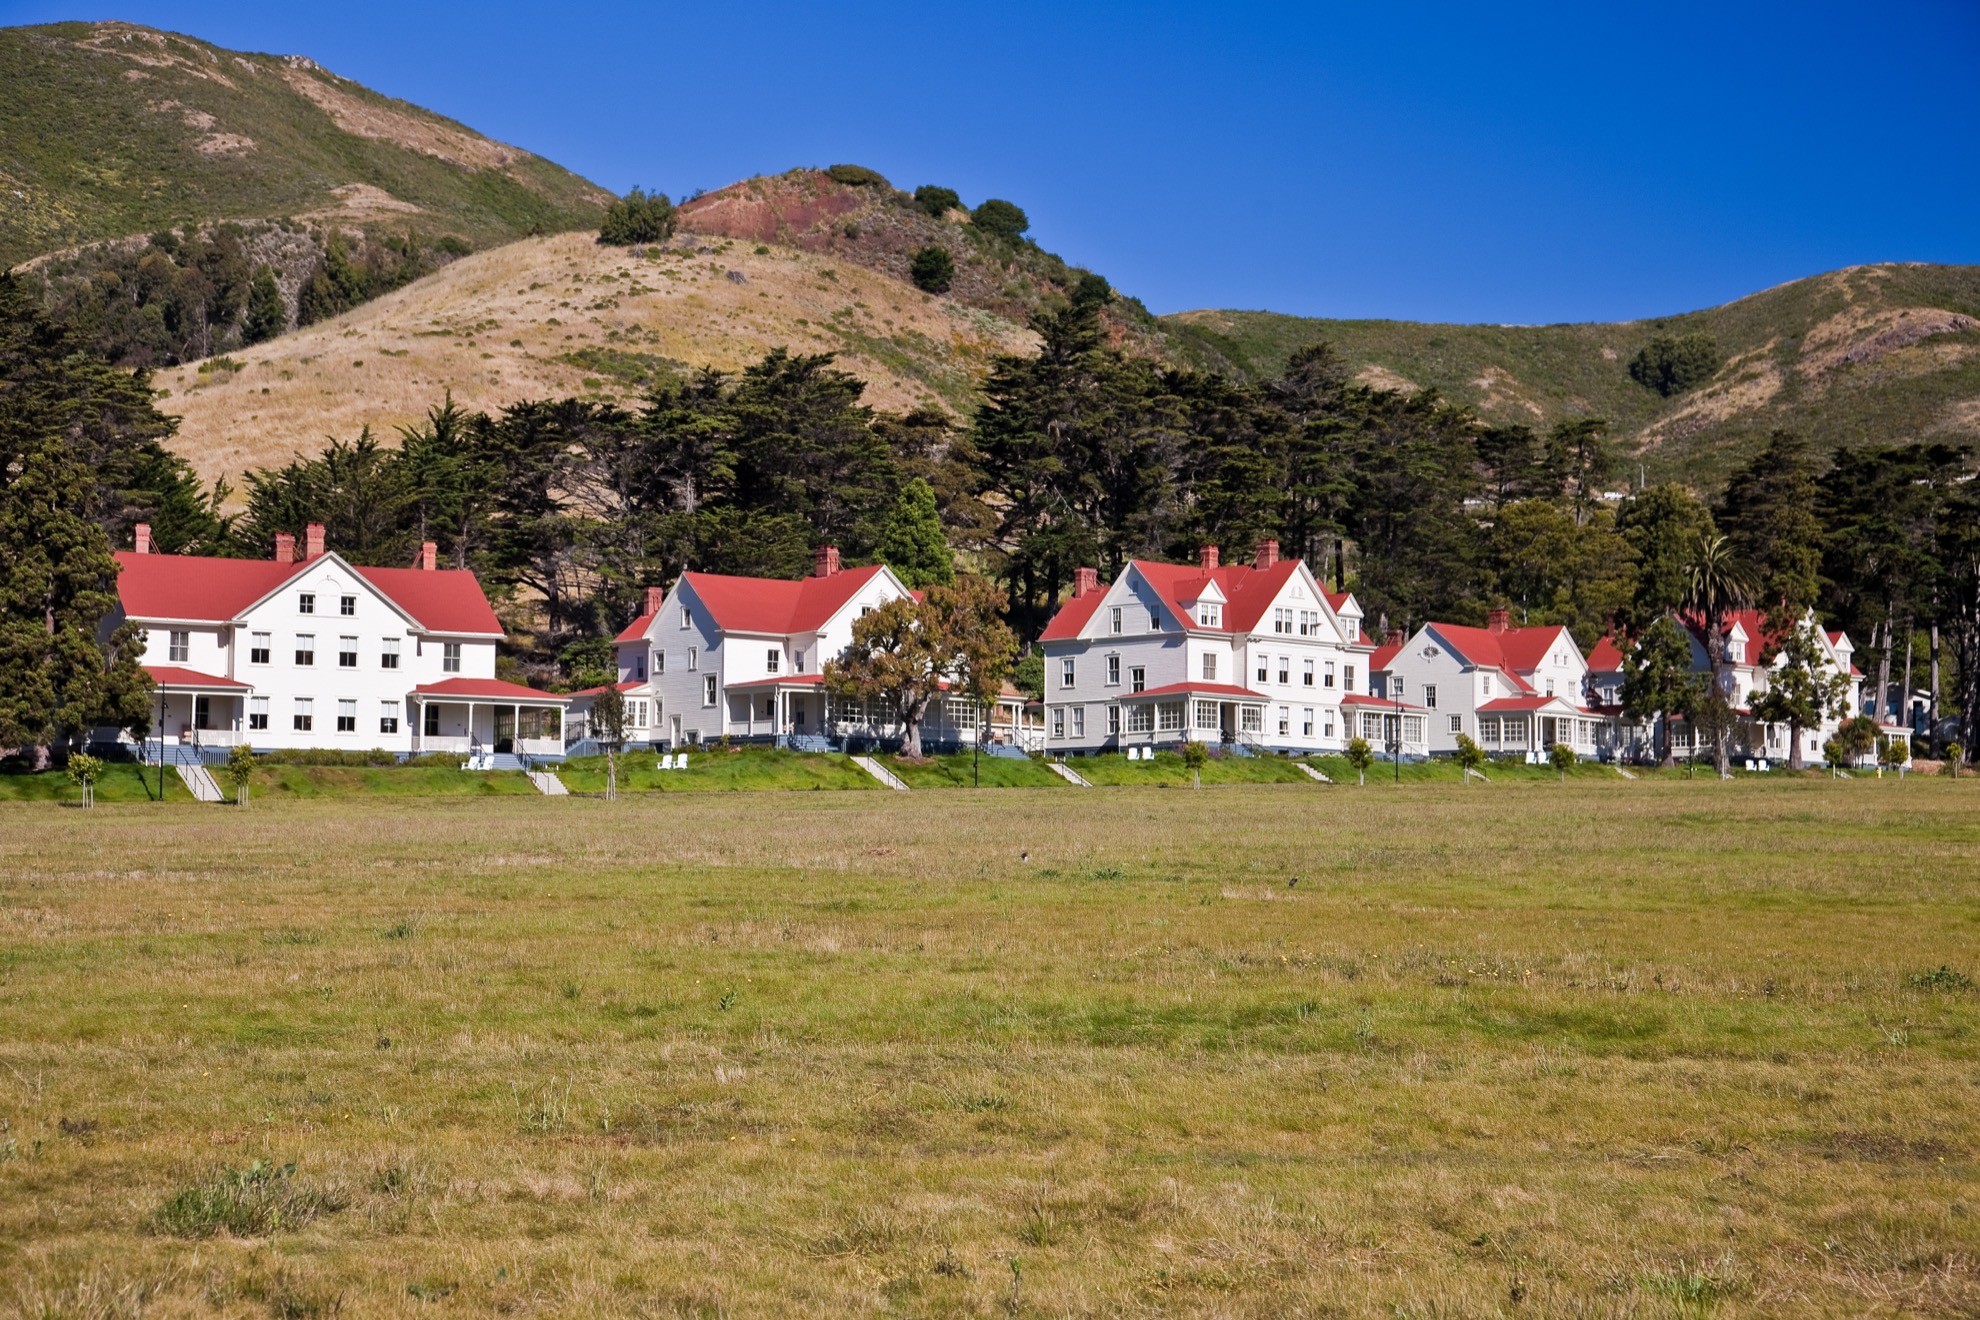 Visitando el Marin Headlands de Marin de San Francisco: 9 cosas que saber - 3